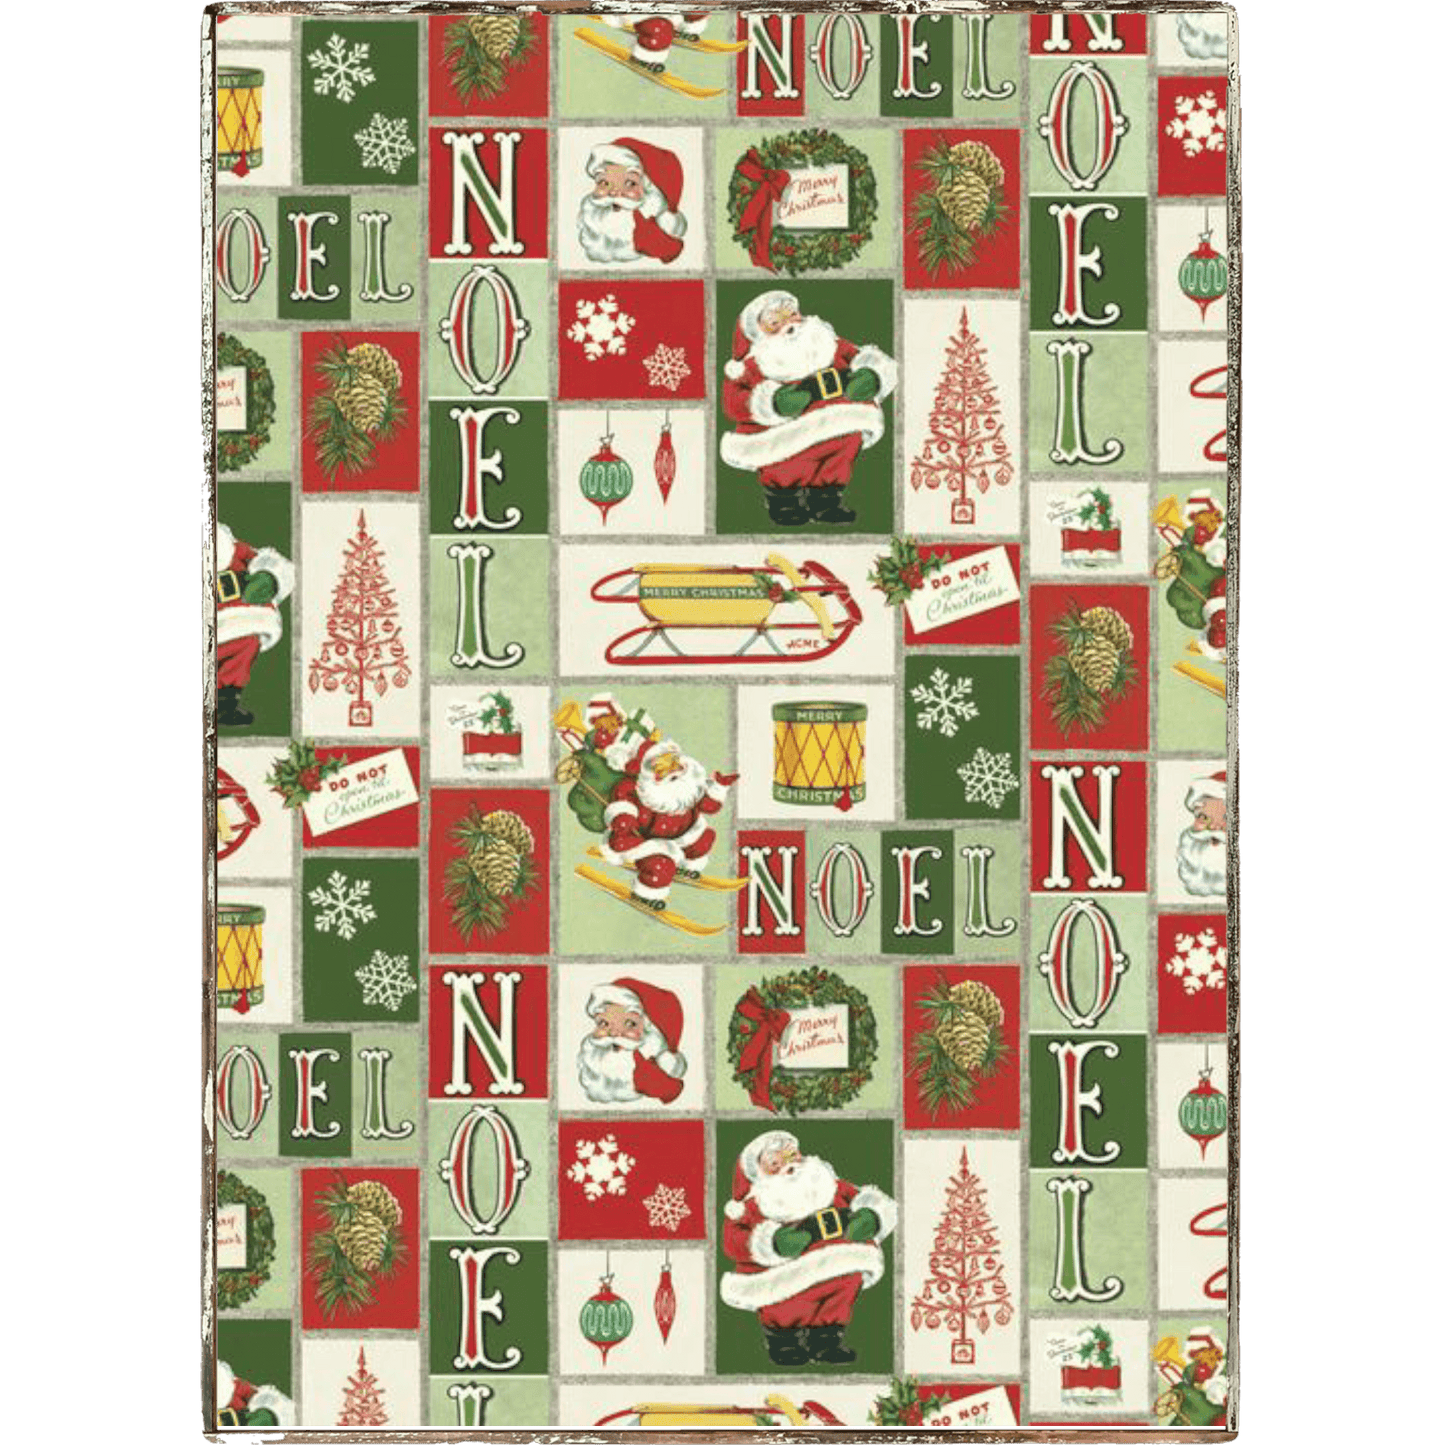 Noel Christmas Framed Poster - true RED betty